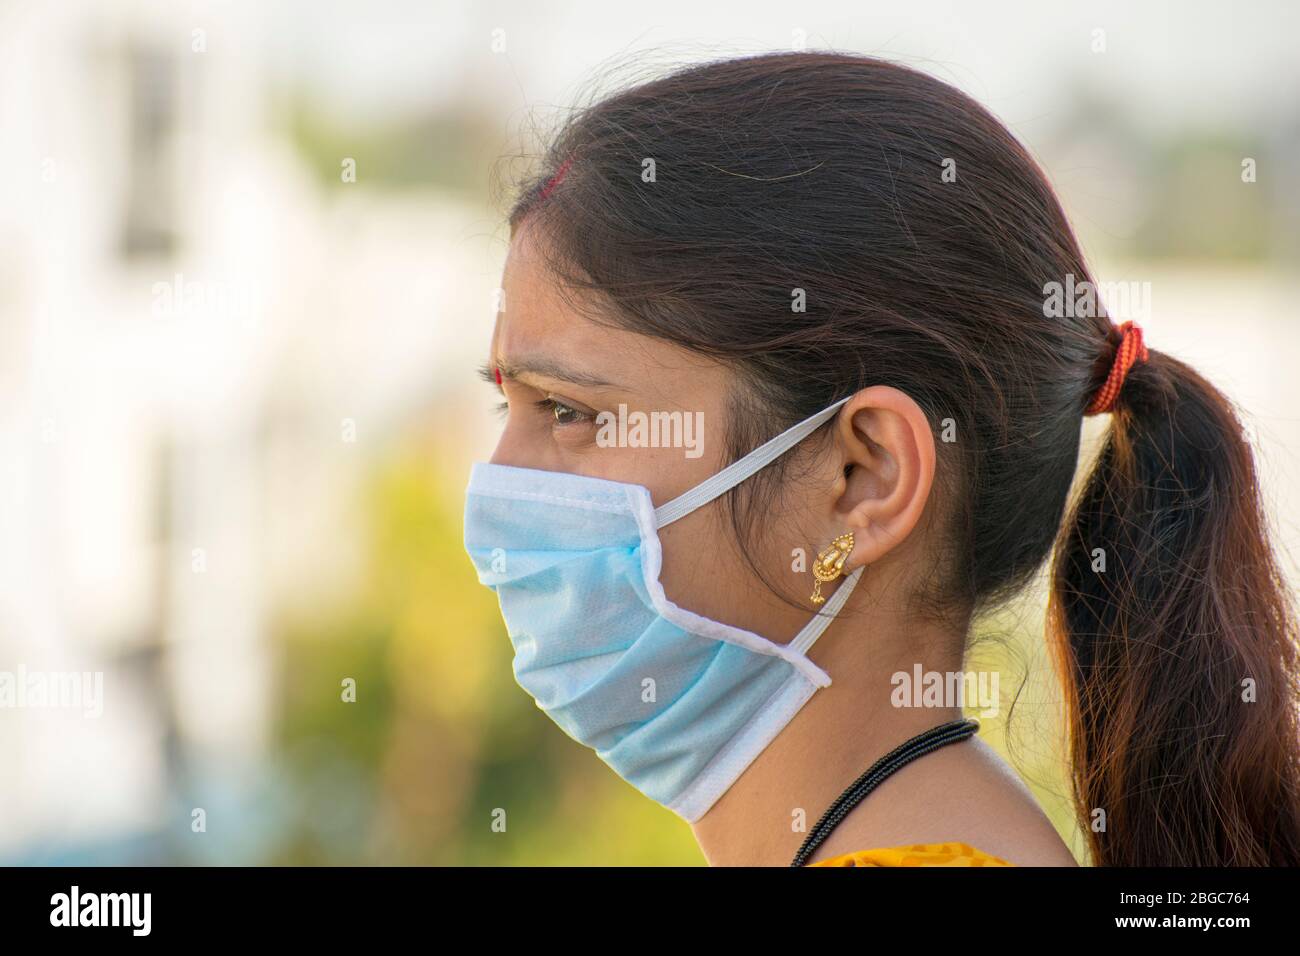 Femme indienne en protection de masque de coronavirus jetable contre le virus corona covid 19 Banque D'Images